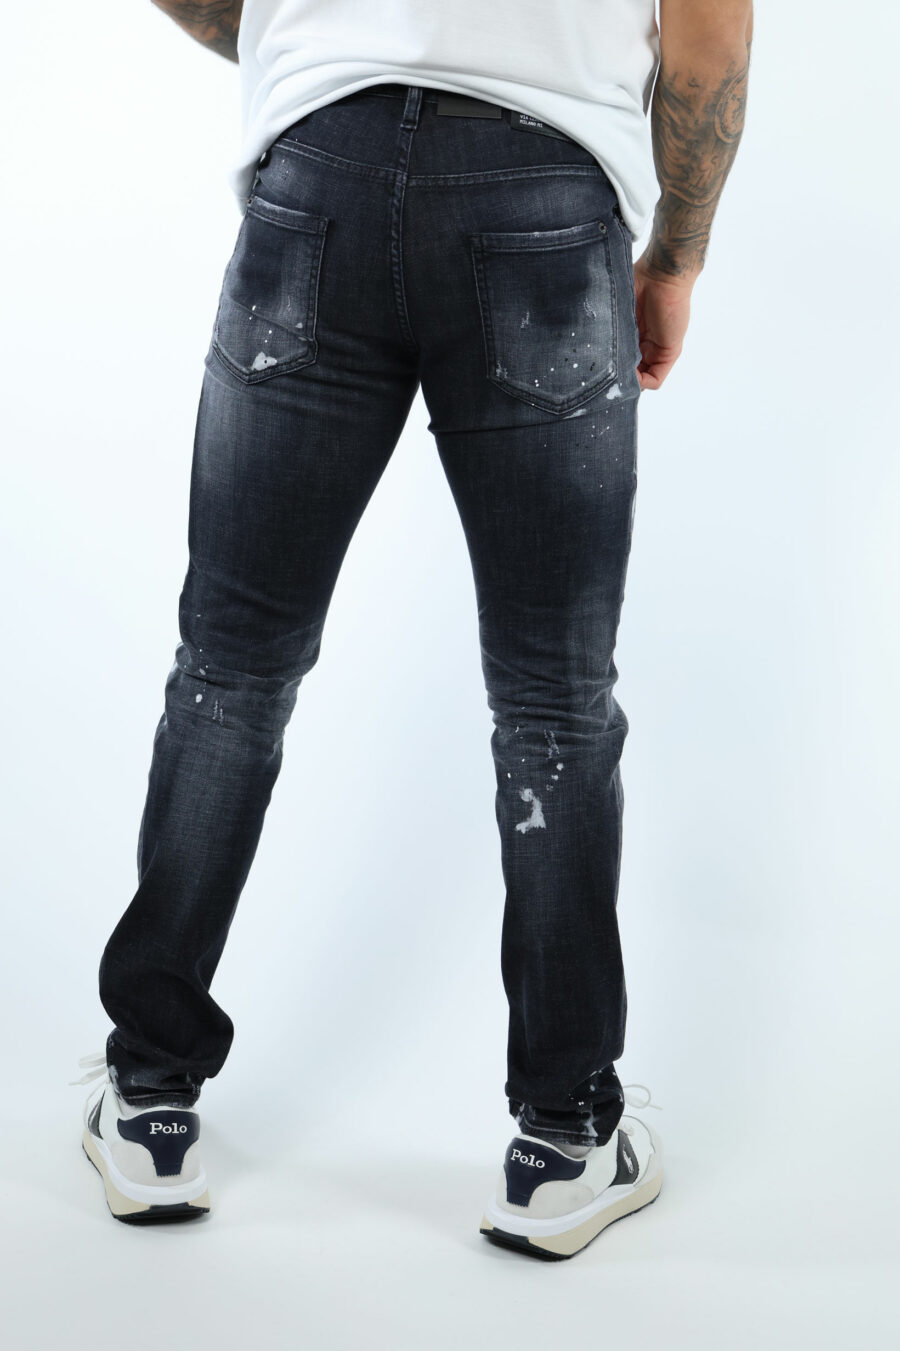 Pantalón vaquero negro "cool guy jean" con rotos y desgastado - 106751